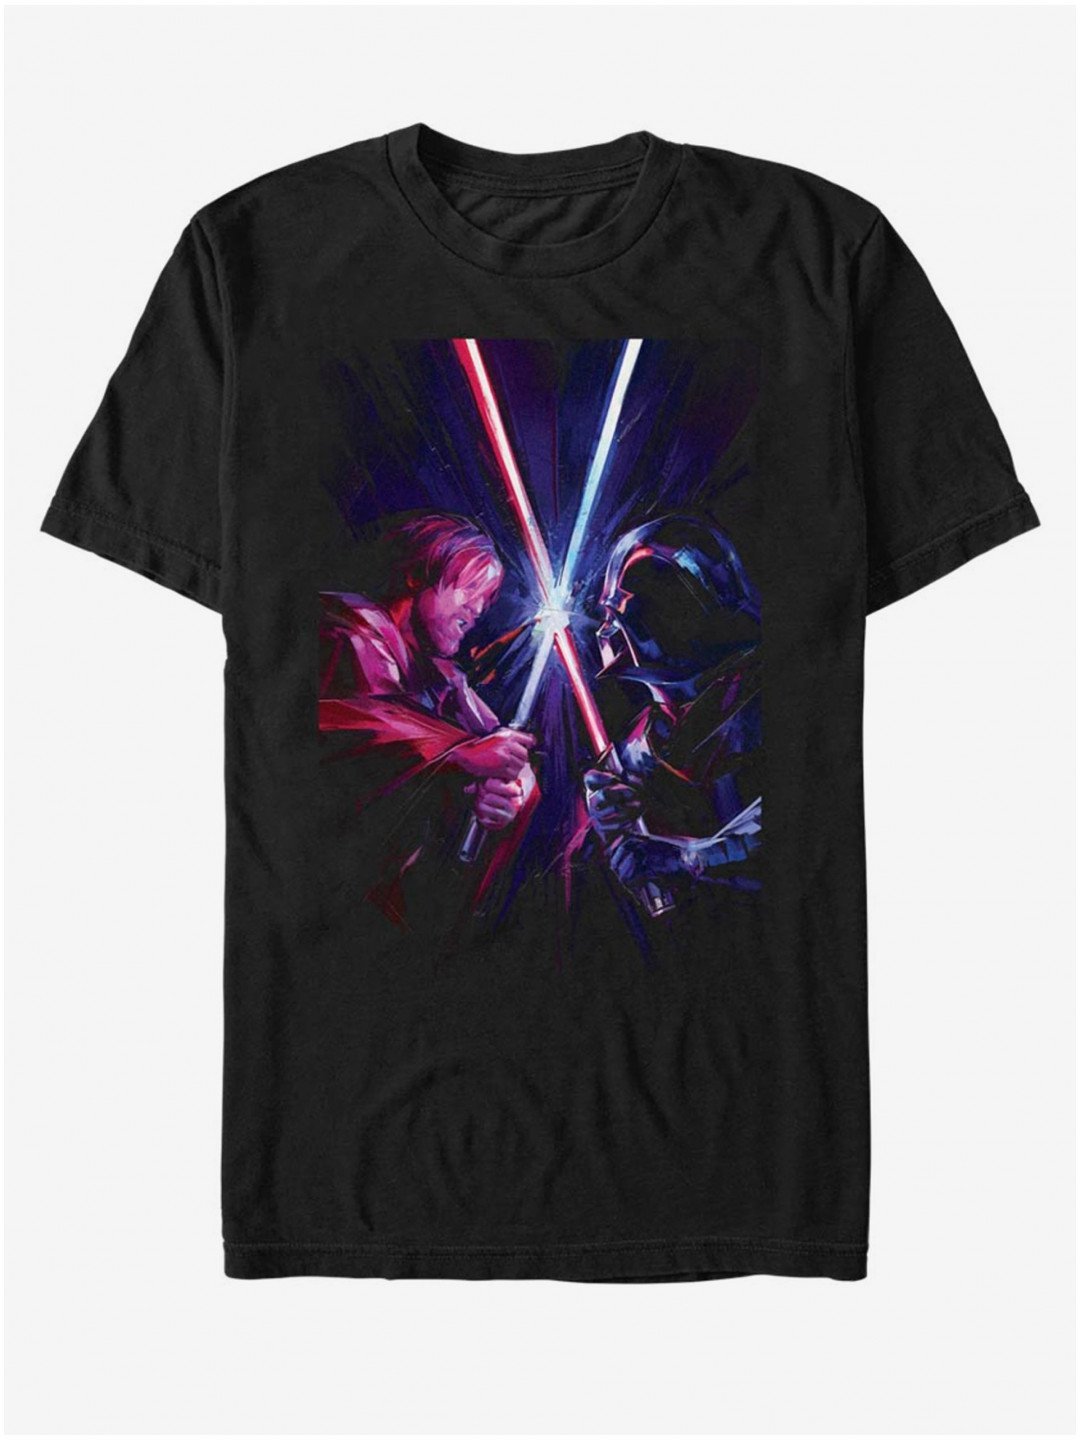 Obi Van Kenobi Darth Vader ZOOT FAN Star Wars – unisex tričko